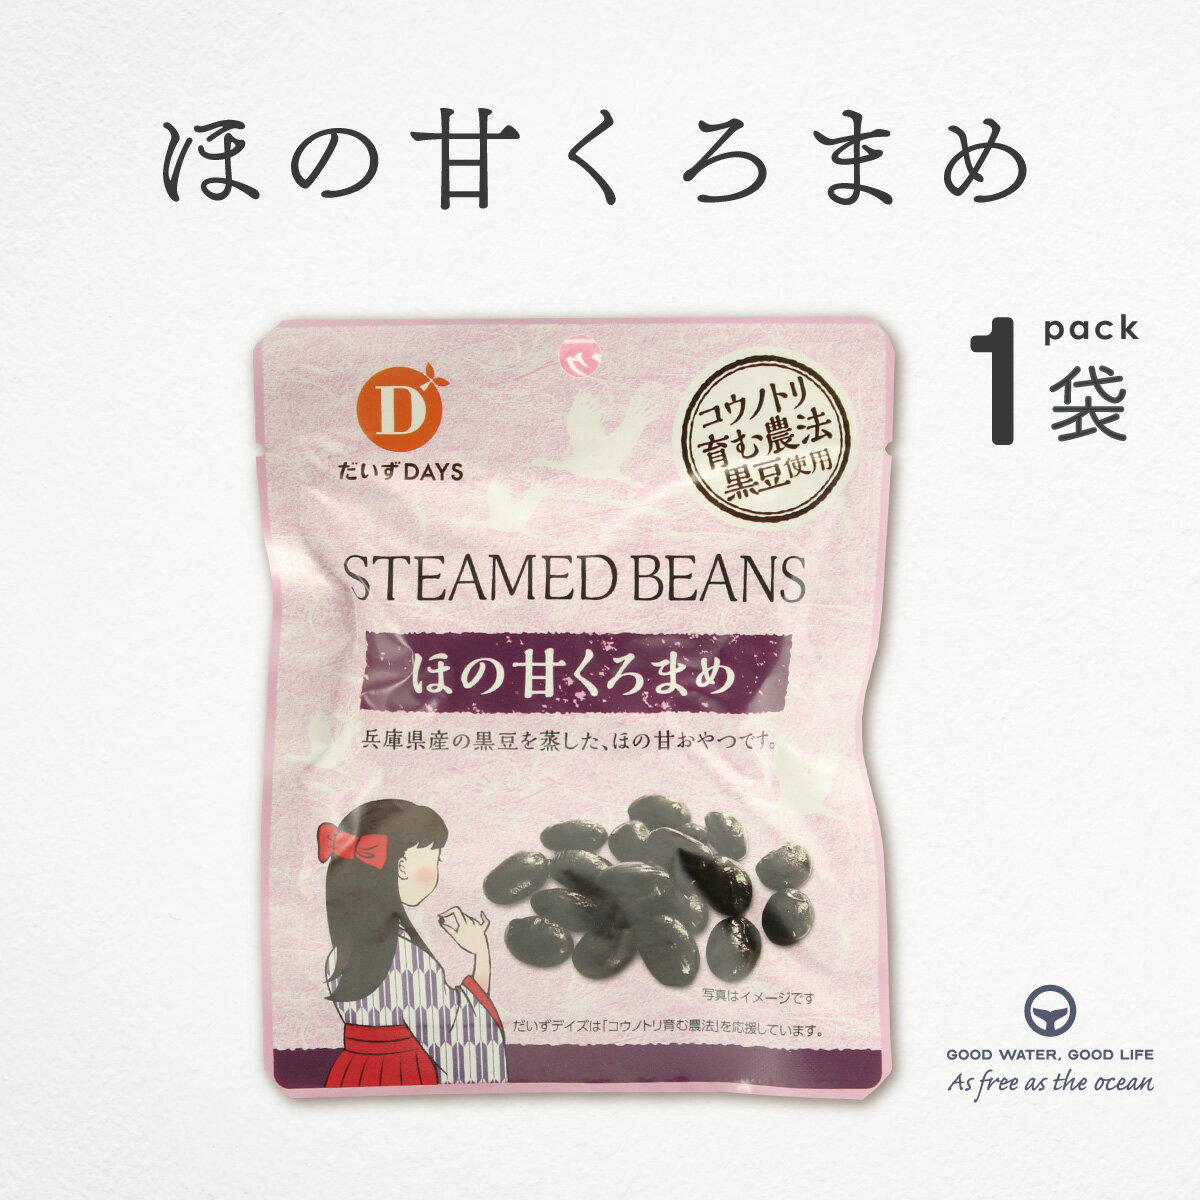 だいずデイズ ほの甘くろまめ 45g 兵庫県産 国産 黒豆 おやつ トッピング オーガニック 和スイーツ ダイエット 健康 自然派